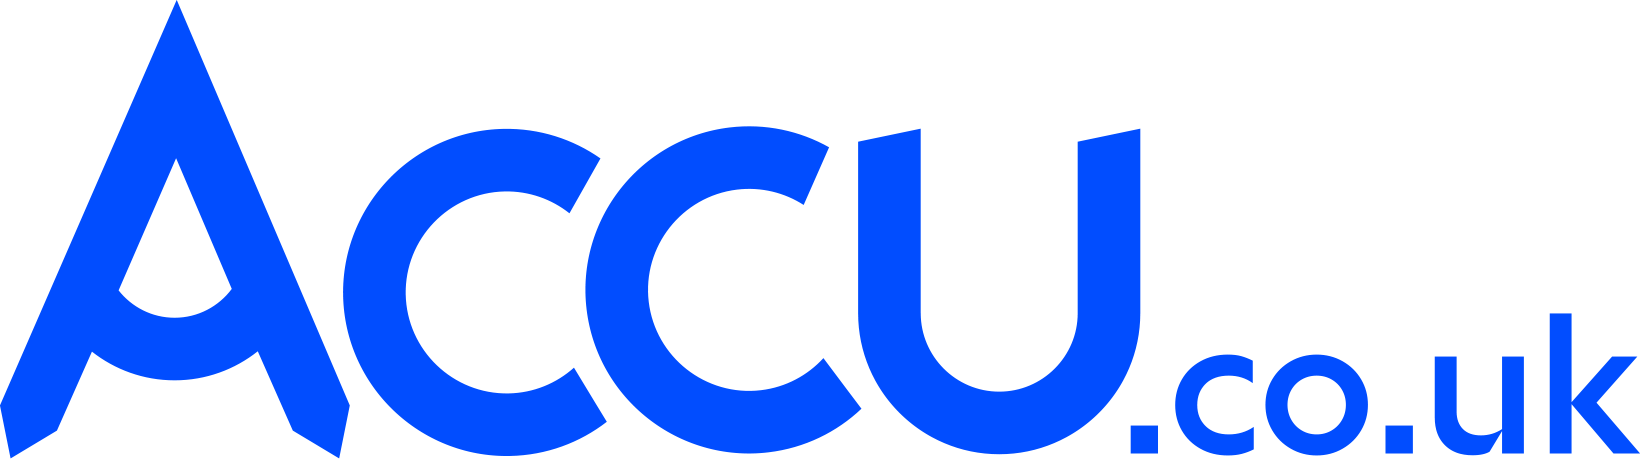 Accu logo